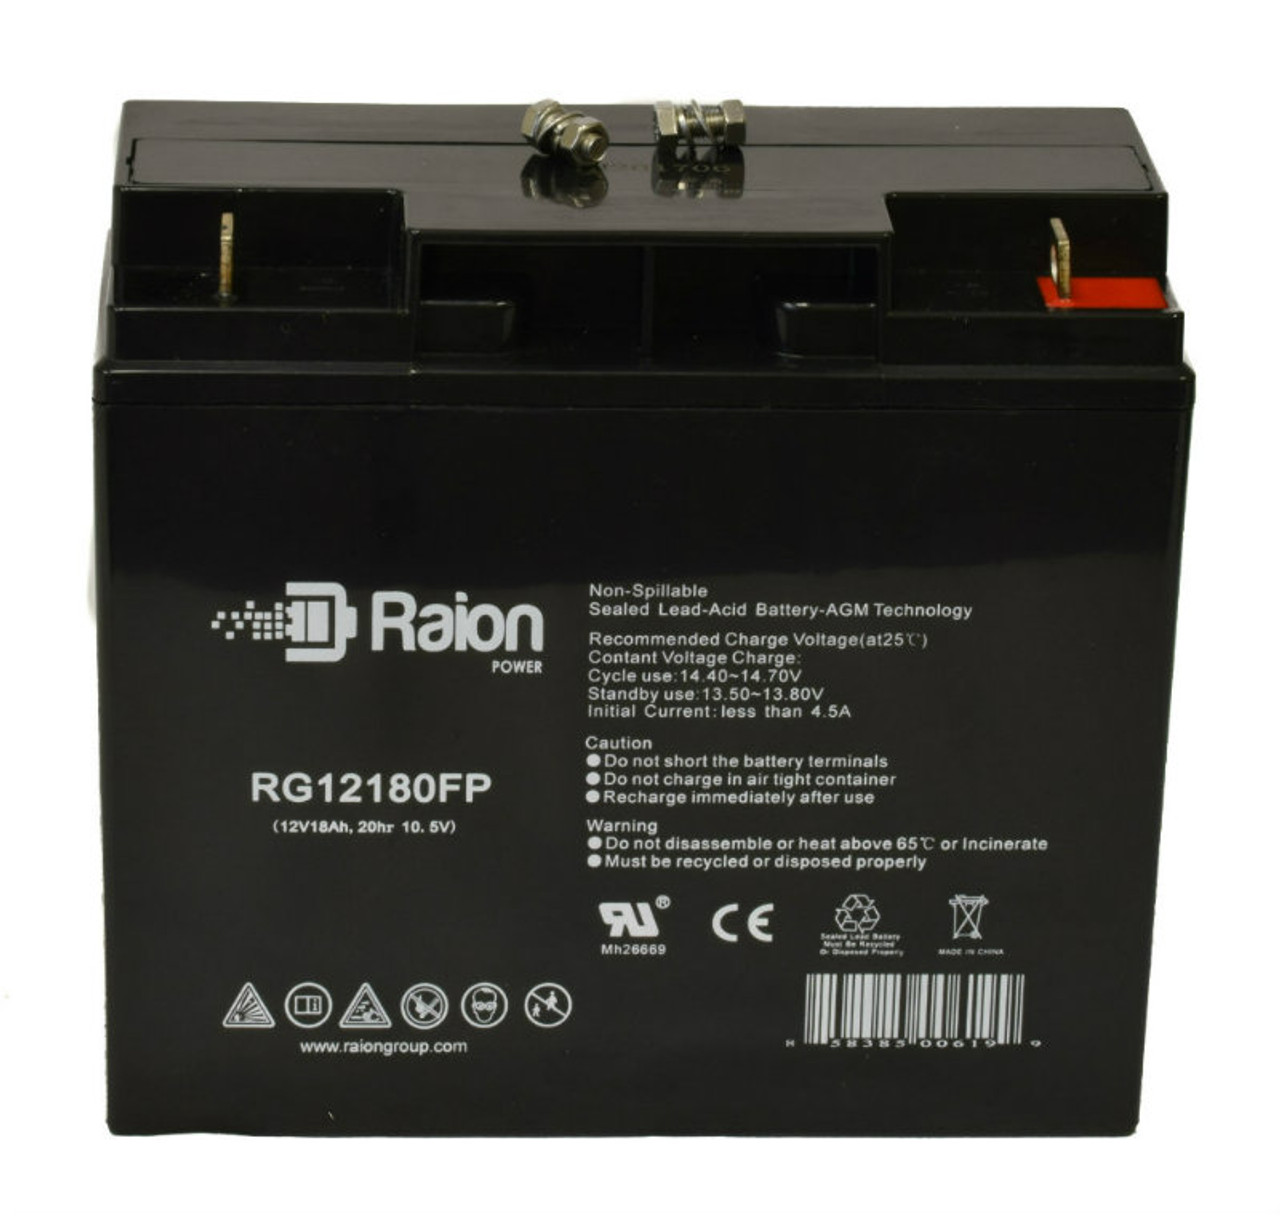 Raion Power RG12180FP 12V 18Ah Lead Acid Battery for Alarmtec BP18-12